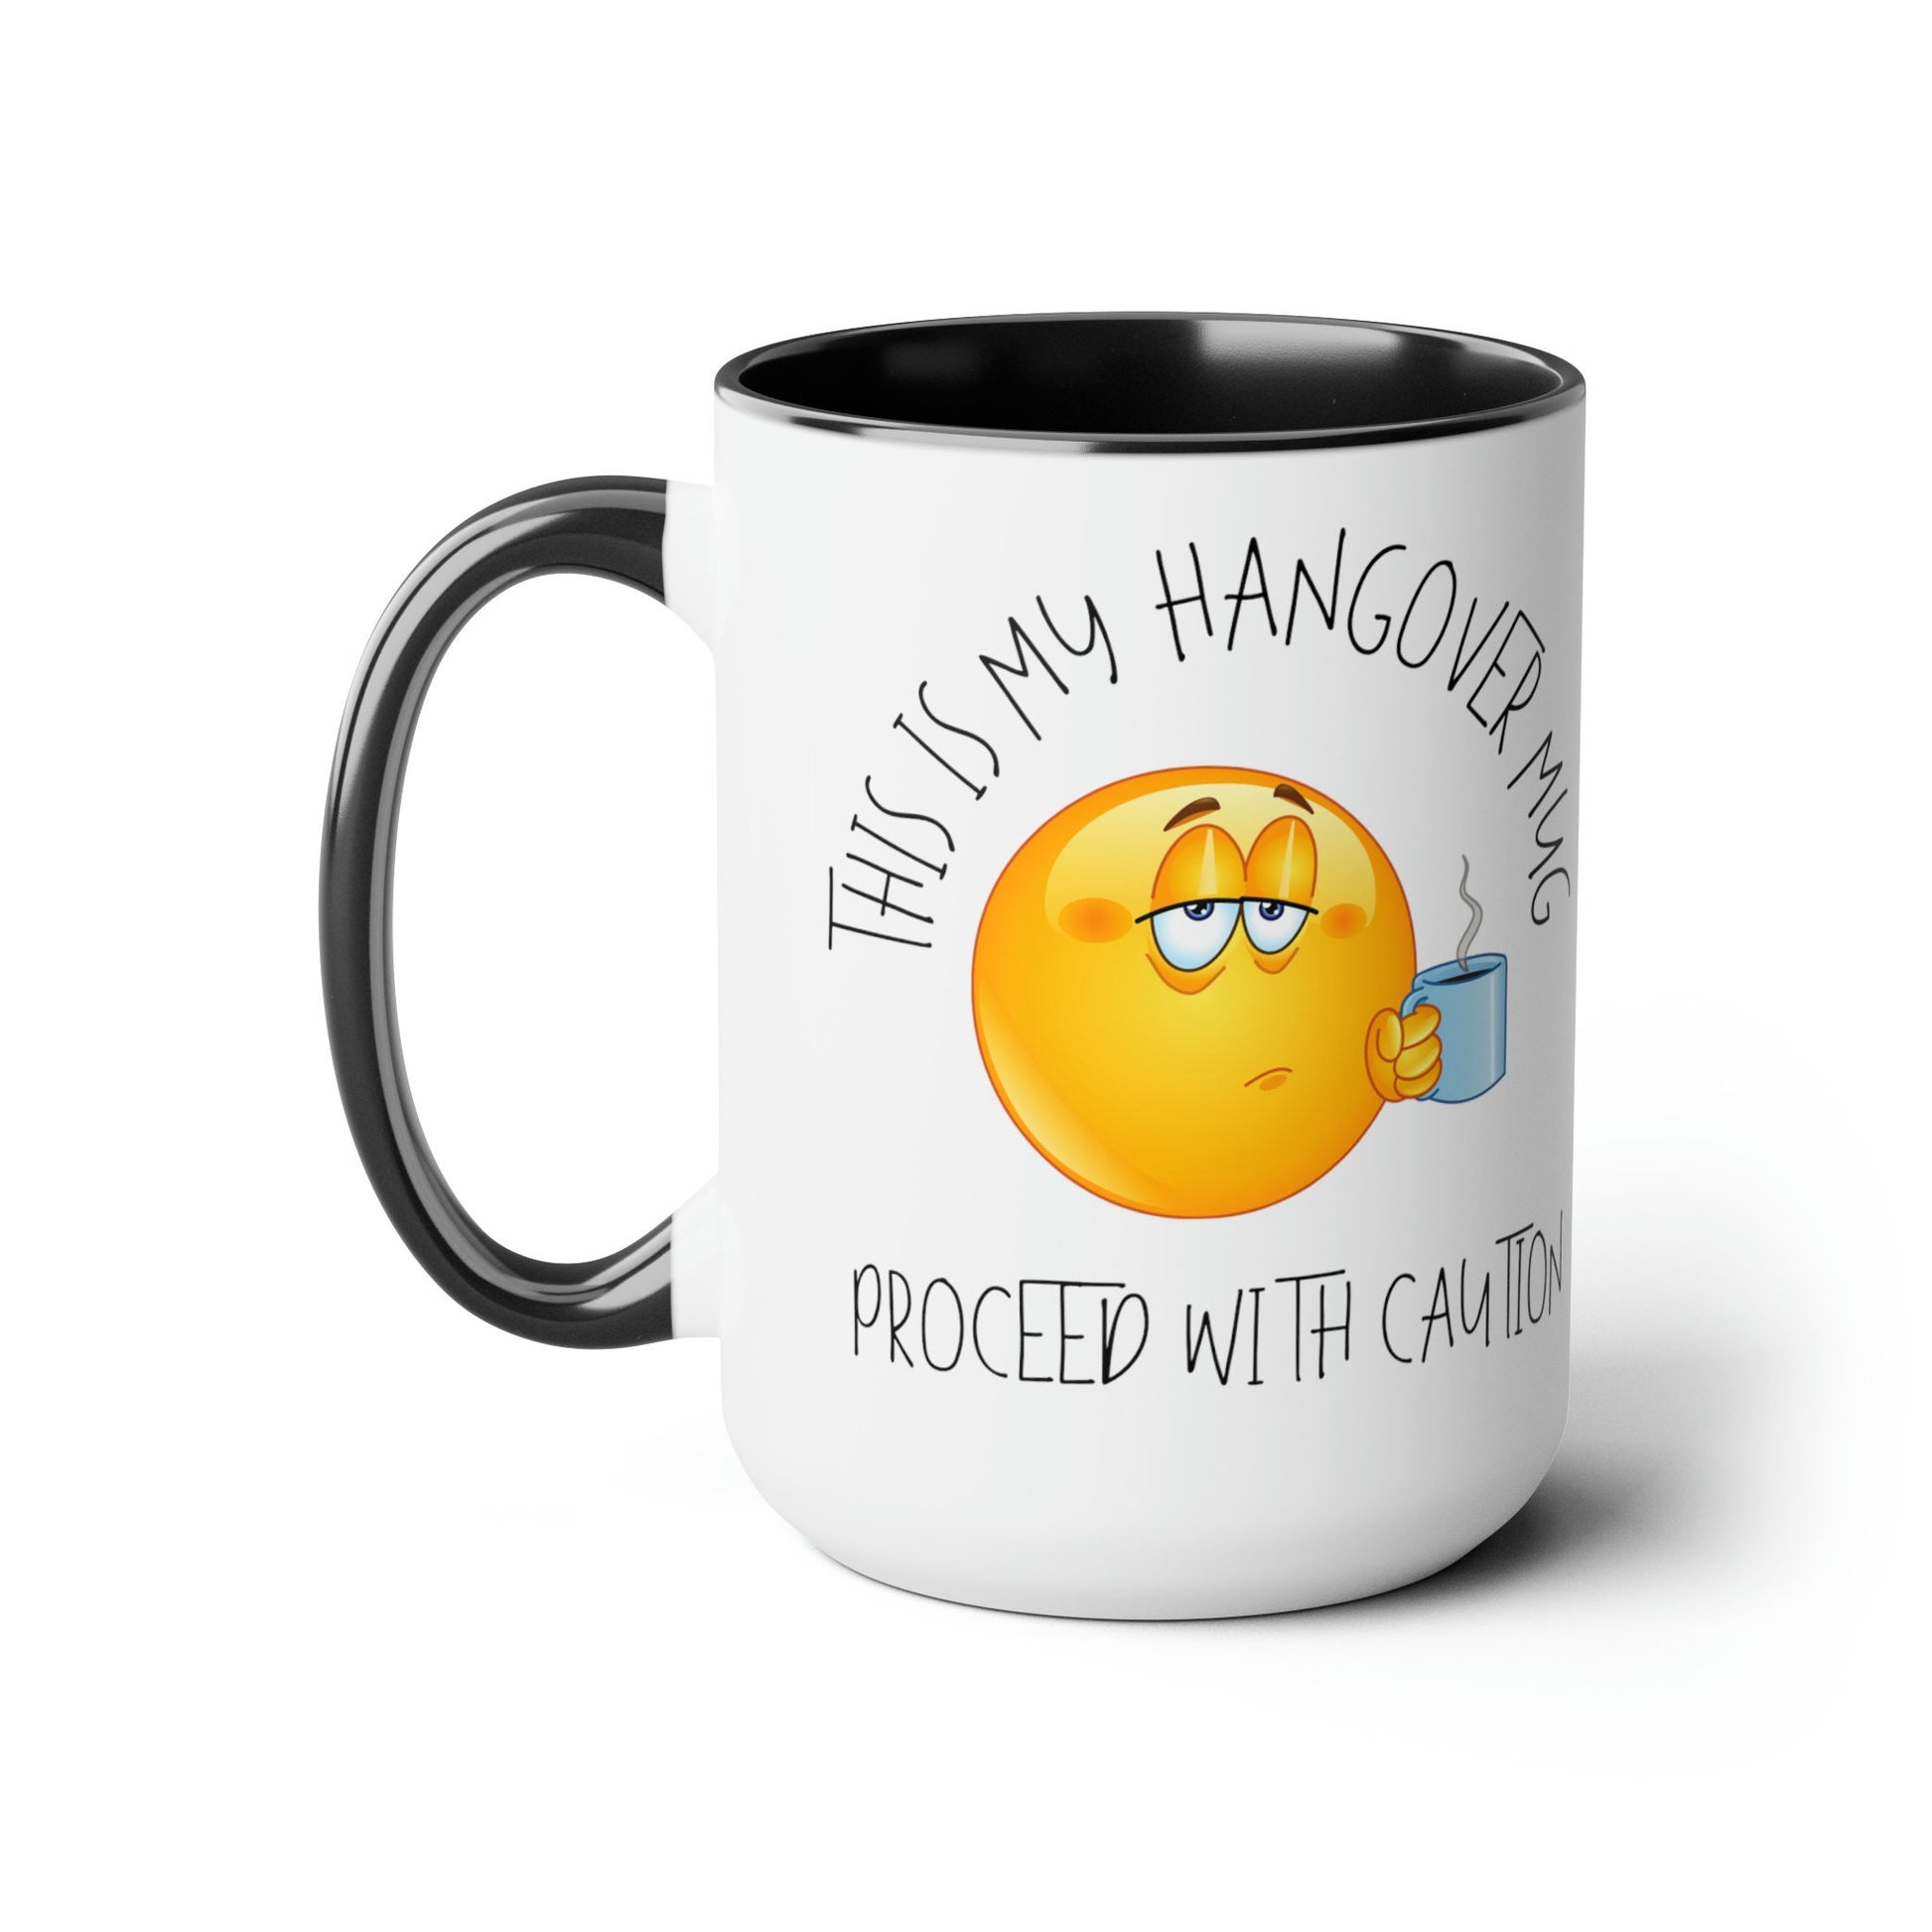 Hangover Mug Two-Tone Coffee Mugs, 15oz